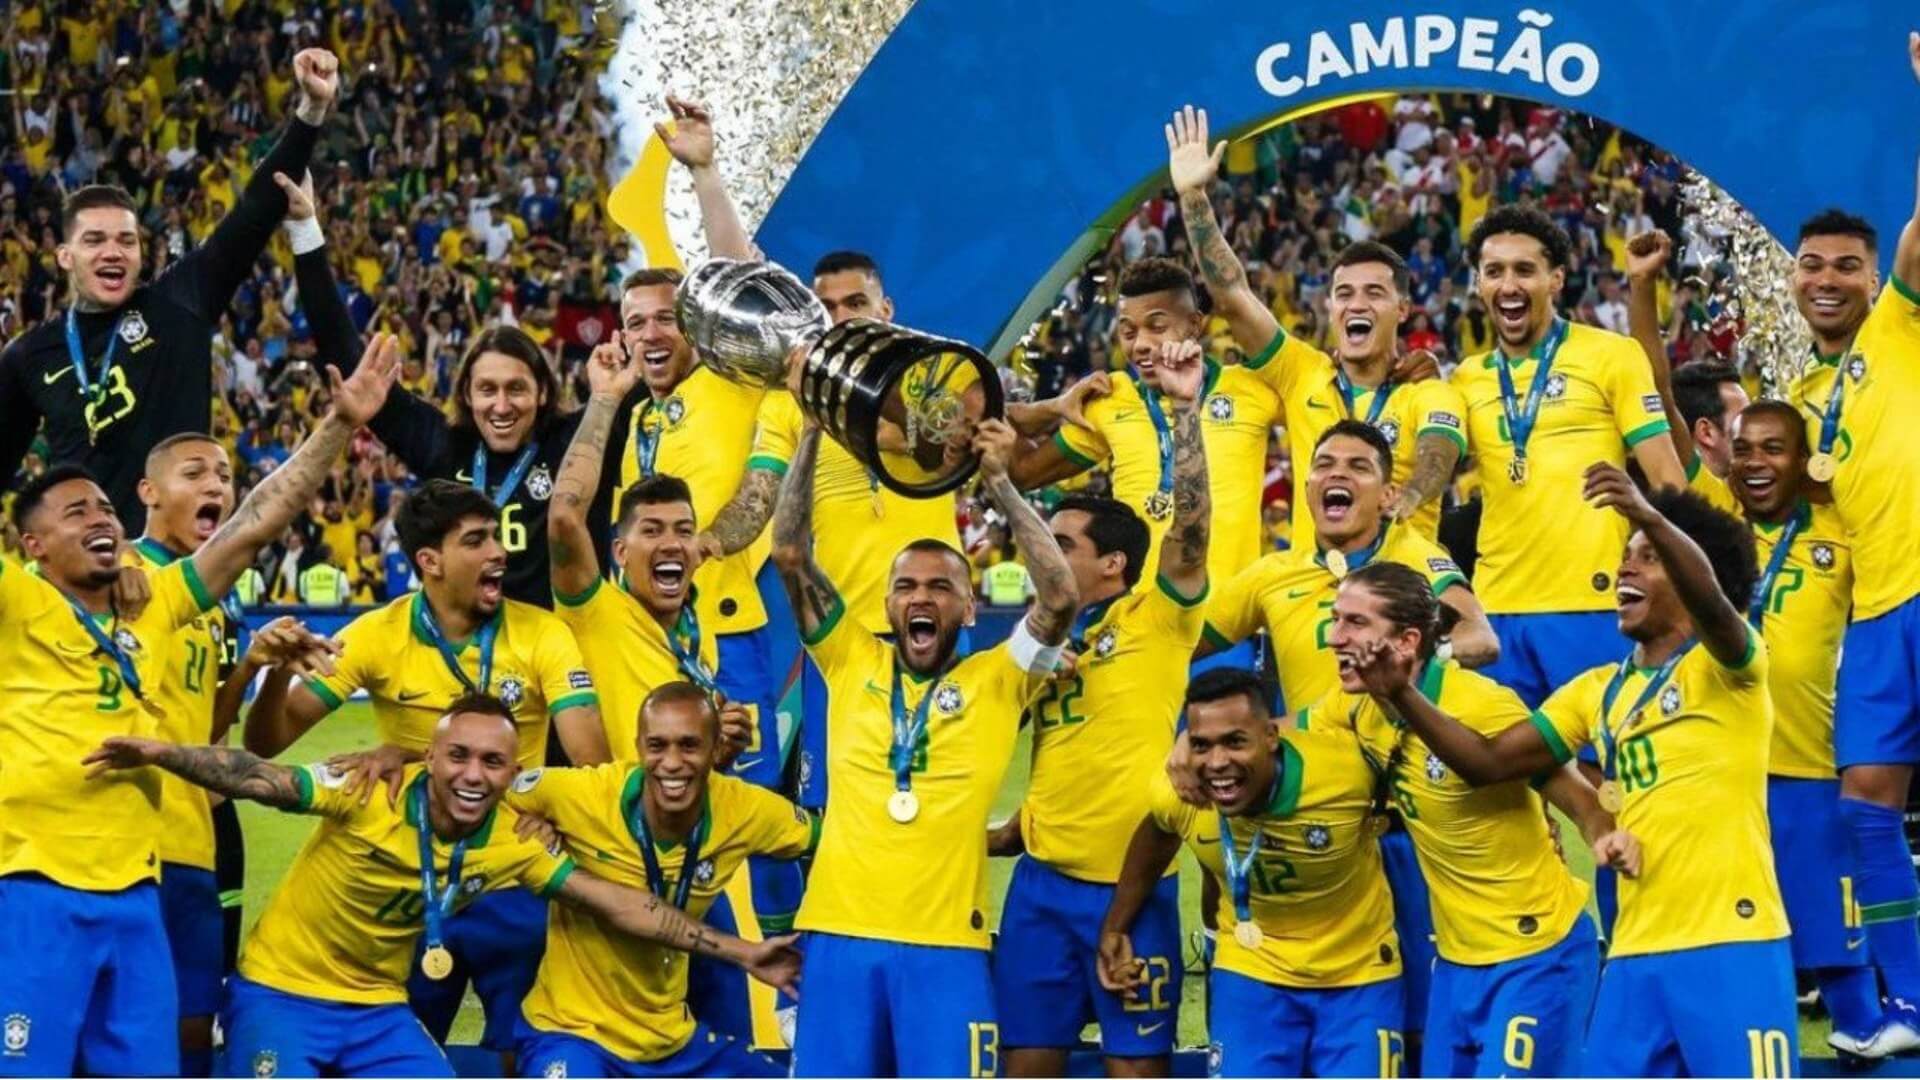 O que podemos aprender do Futebol Brasileiro